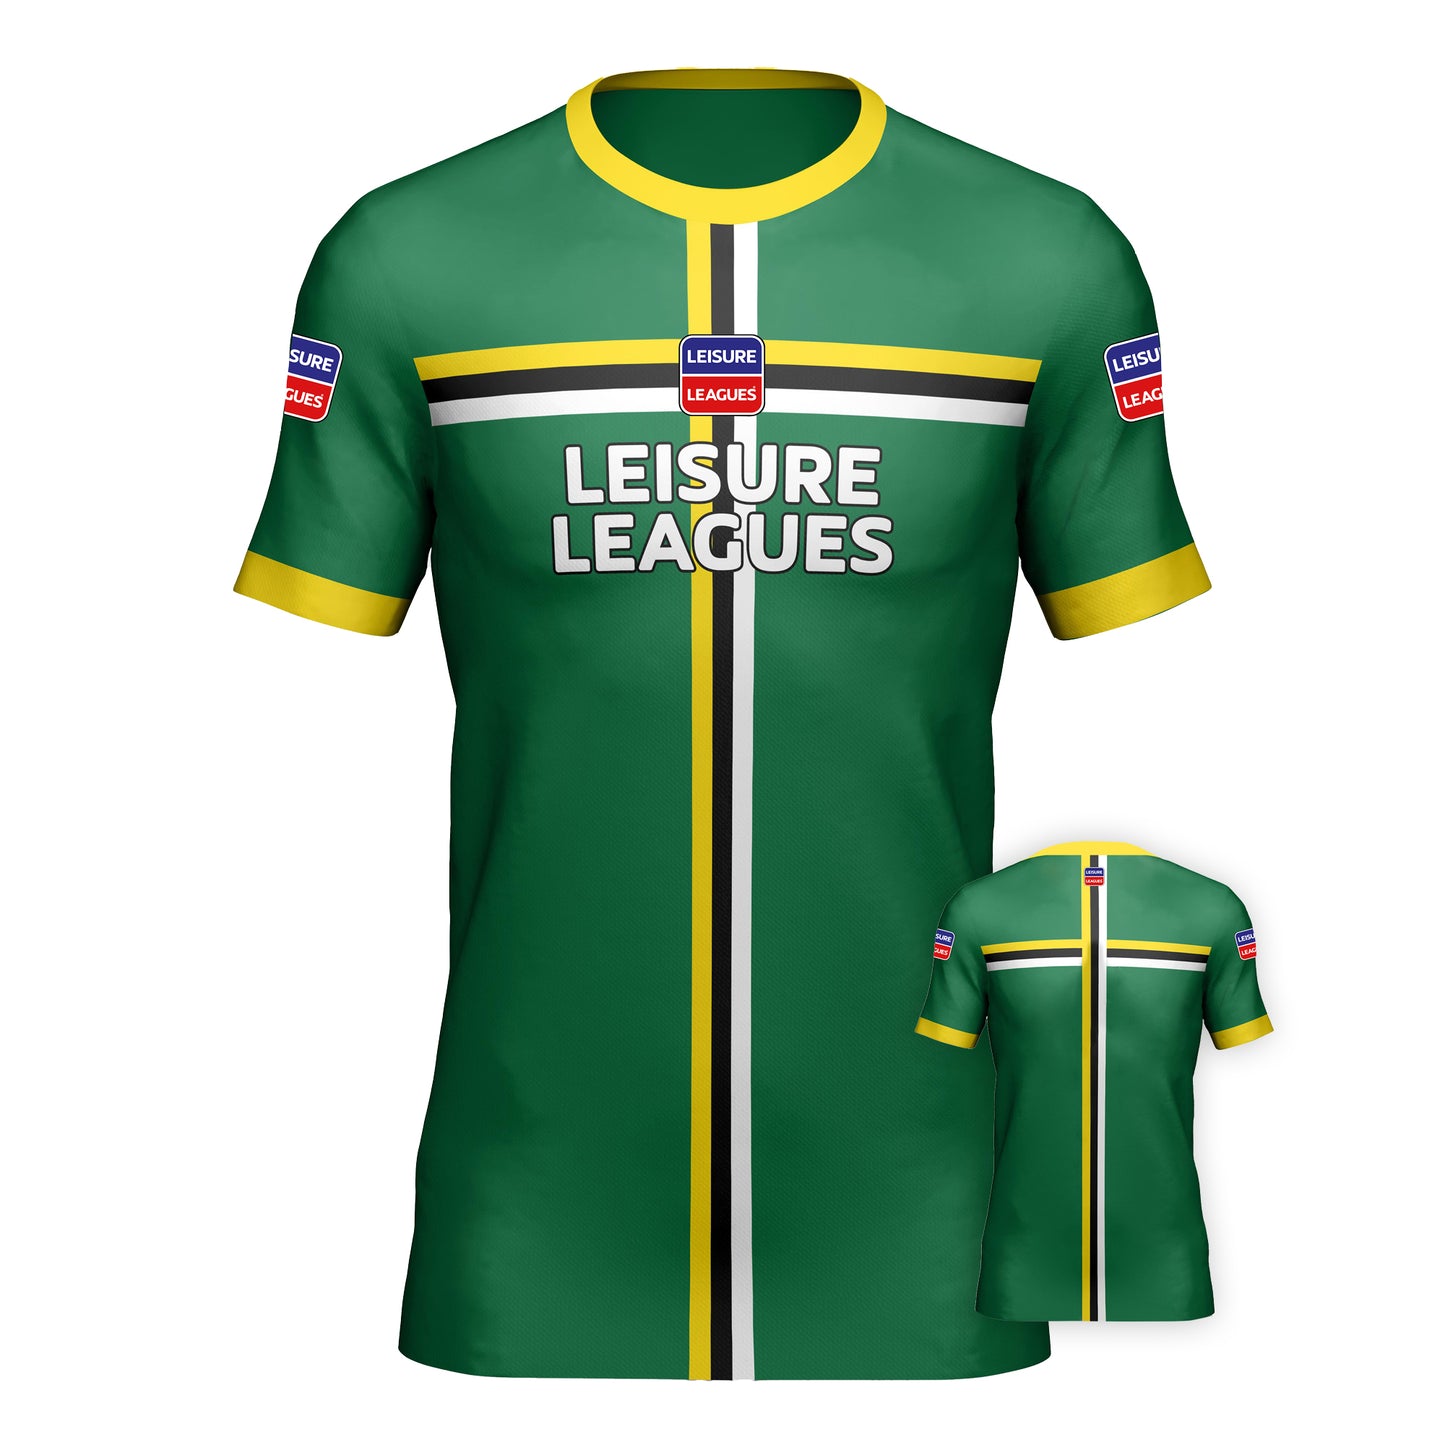 Football Shirt Leisure Leagues Kit Team Tshirt Africa Green